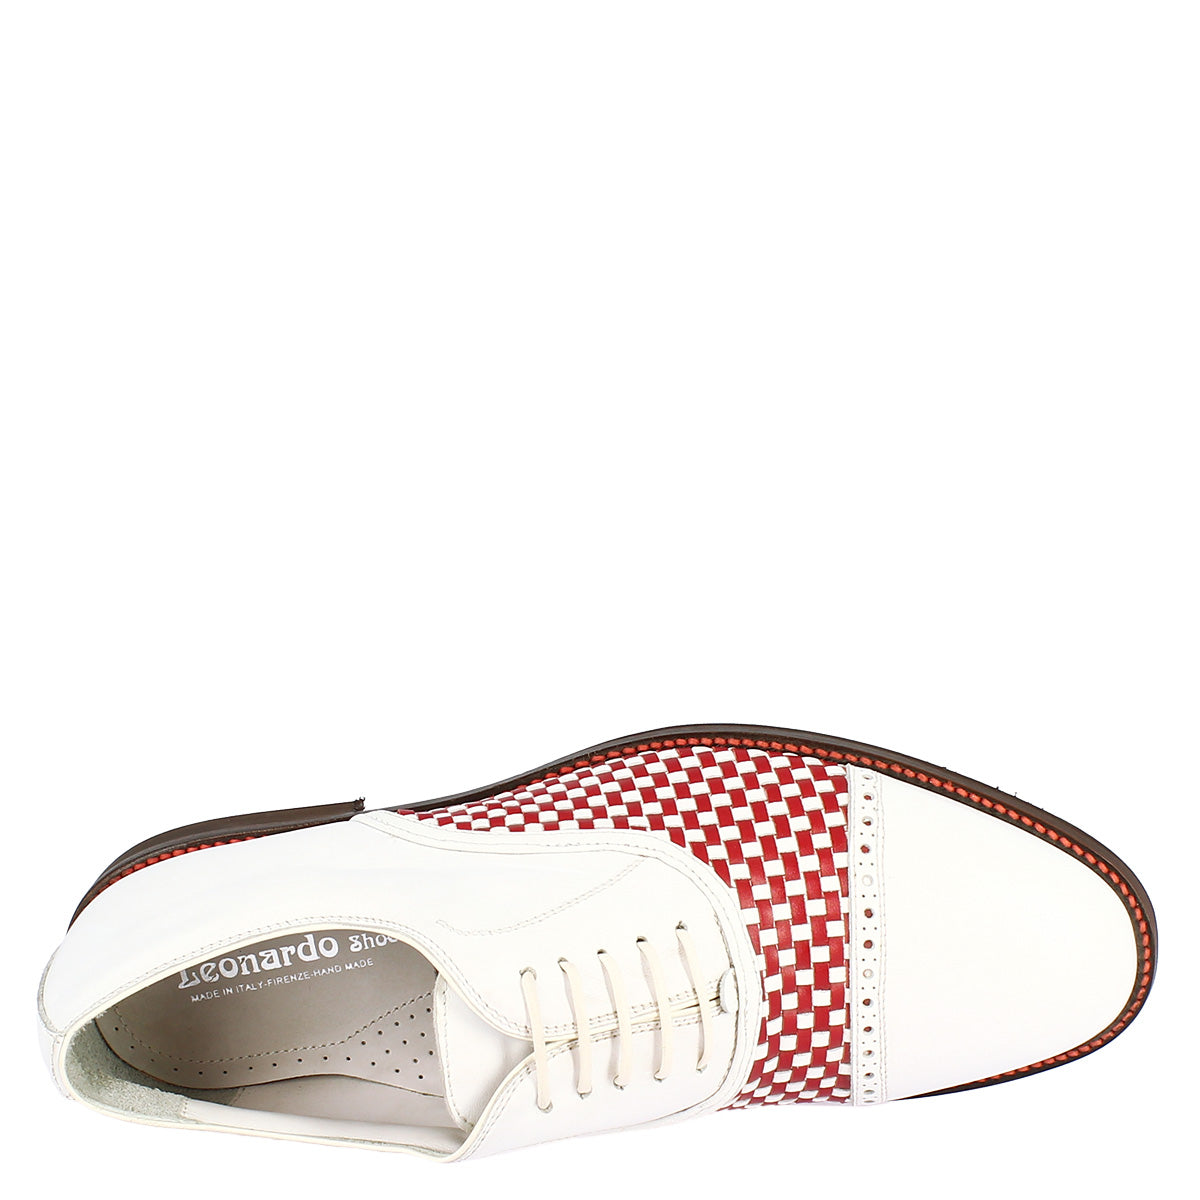 Scarpe classiche da golf donna artigianali in pelle bianca rossa